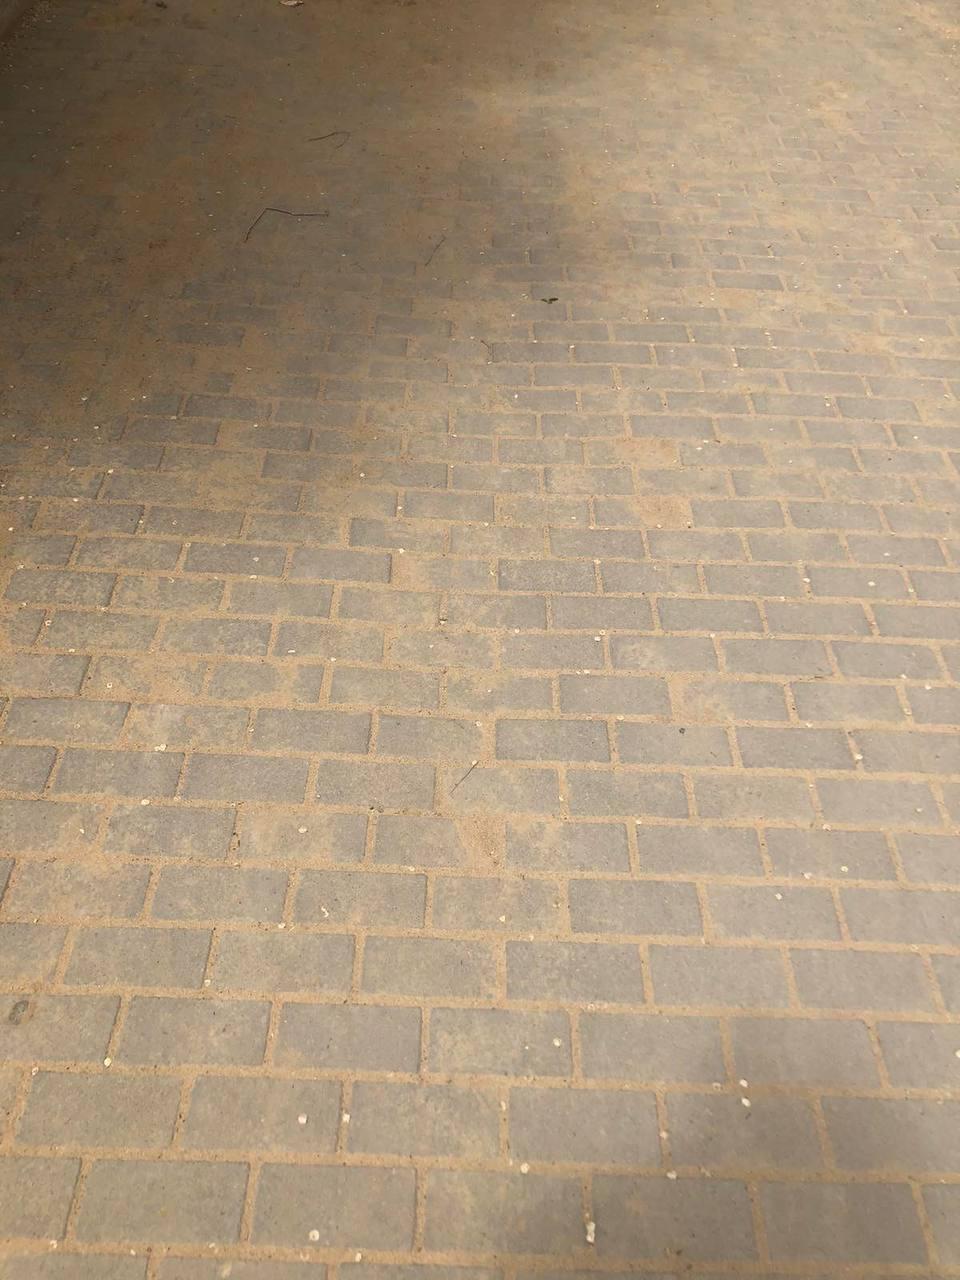 Читинцы пожаловались на отремонтированный тротуар на улице Ленина